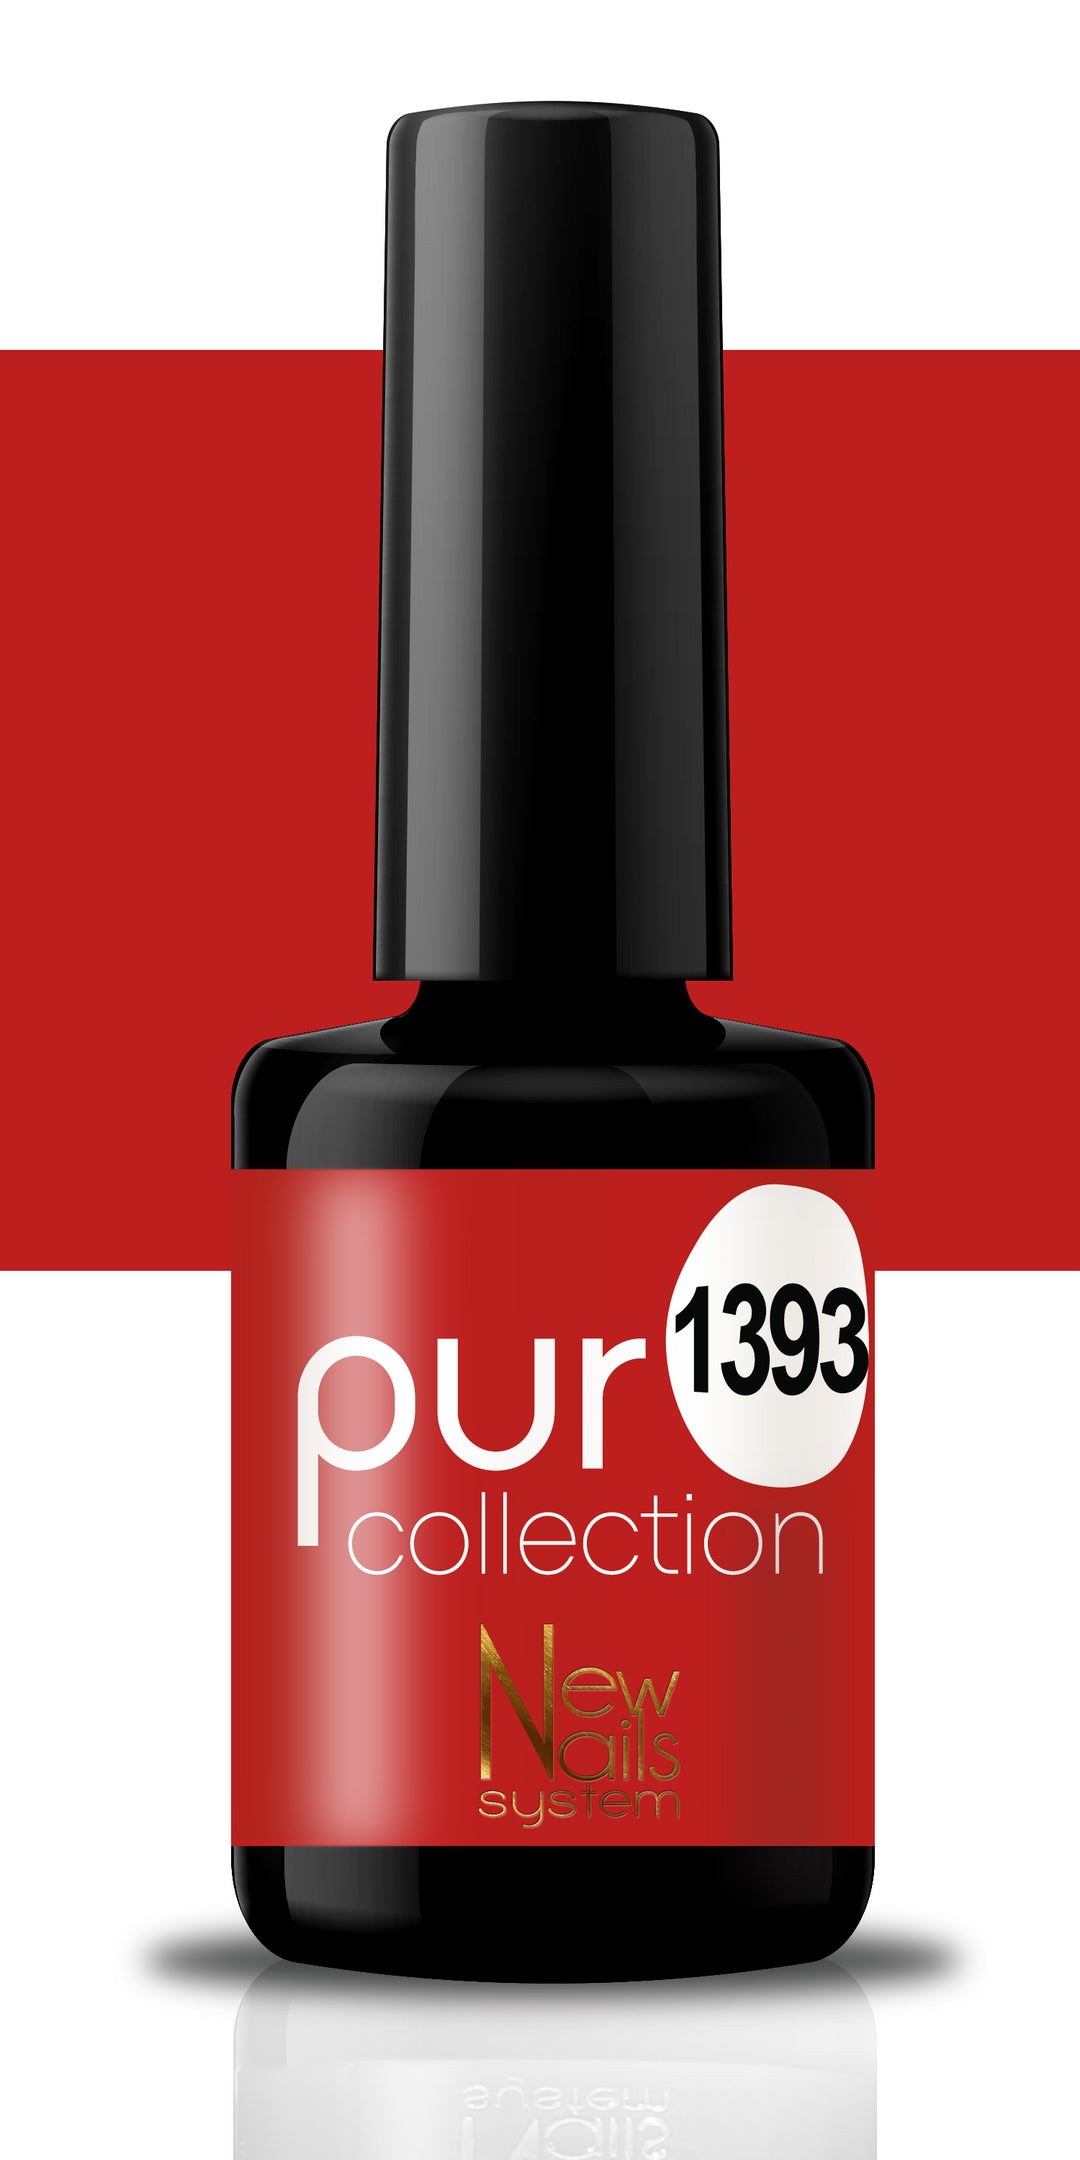 Puro collection 1393 colore Rouge Passion semipermanente 5ml